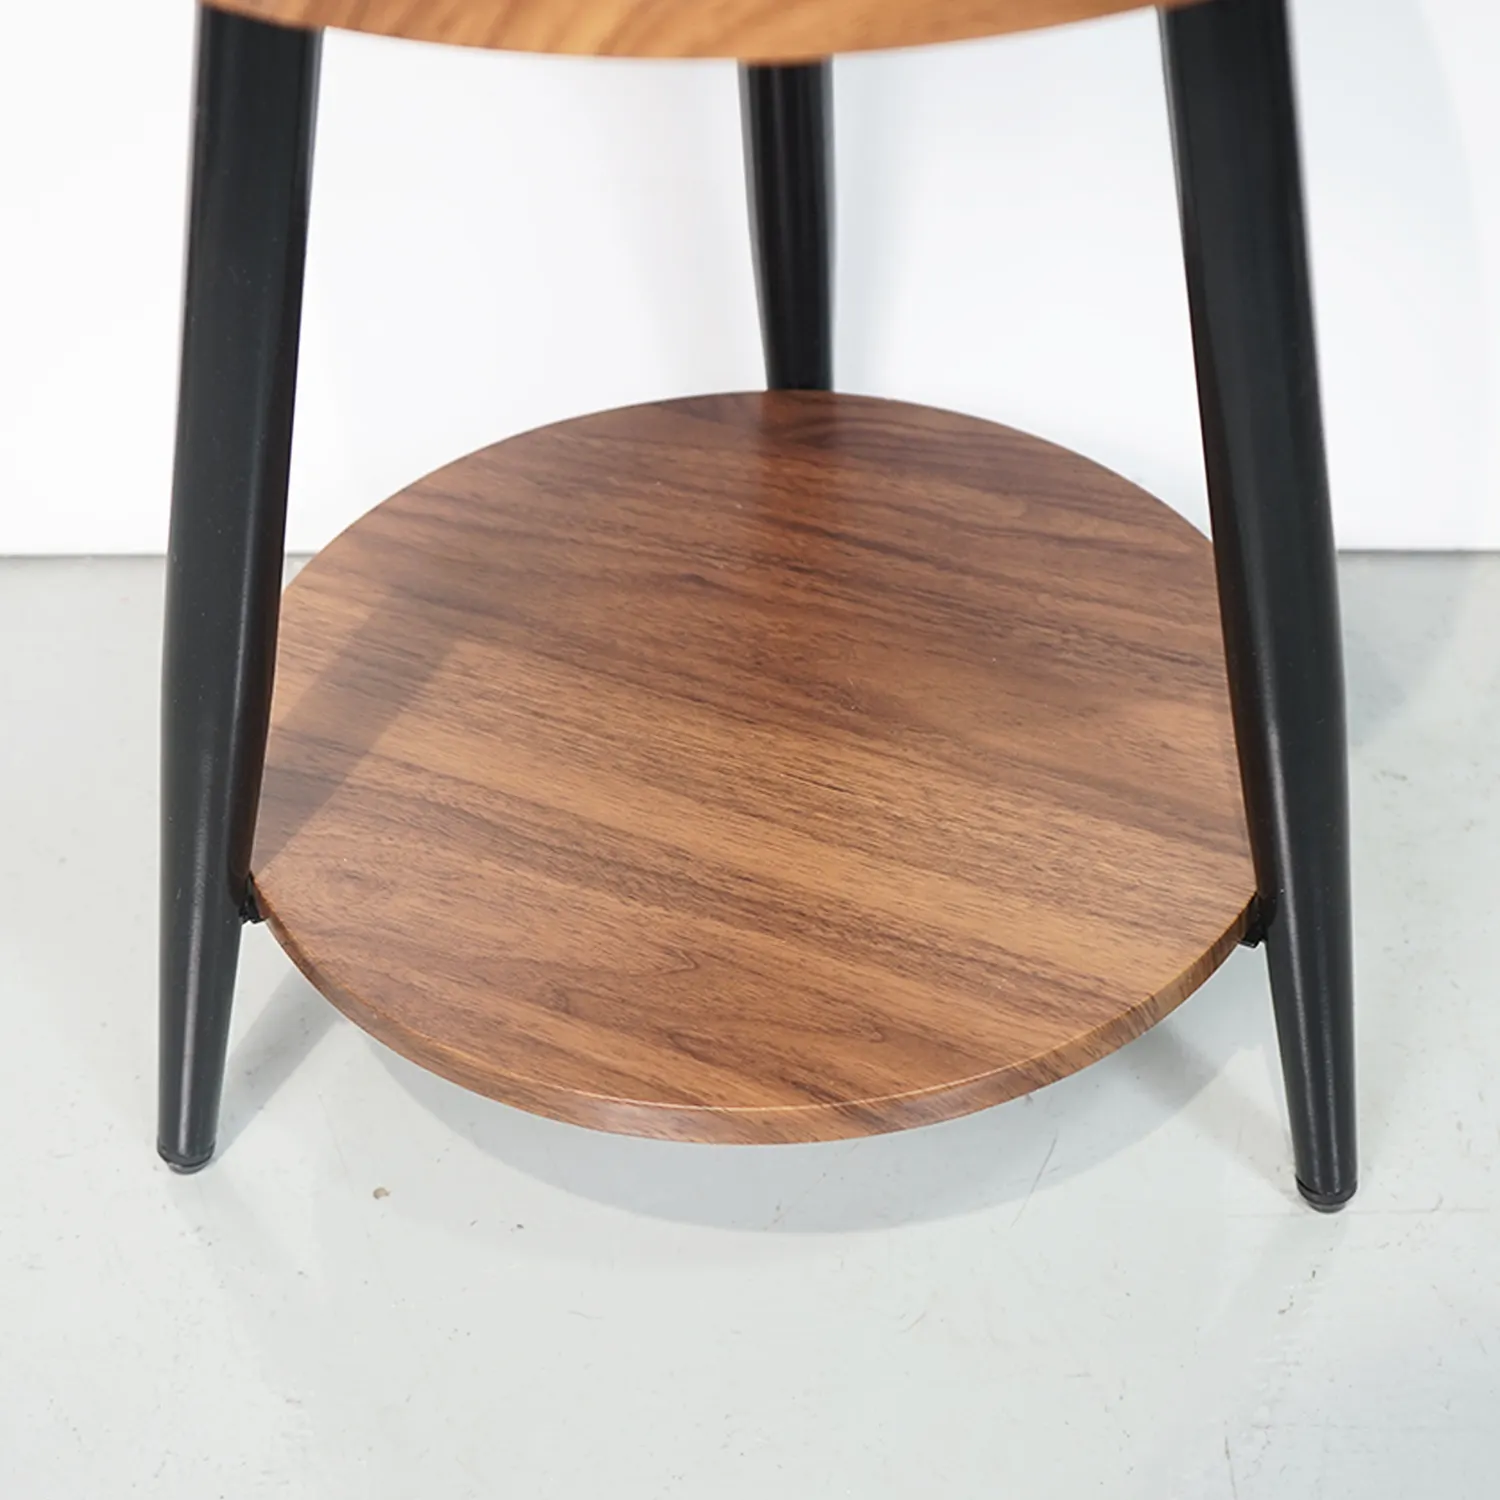 Diseño moderno con marco de acero resistente, muebles de madera MDF para sala de estar y dormitorio, mesa auxiliar redonda de madera